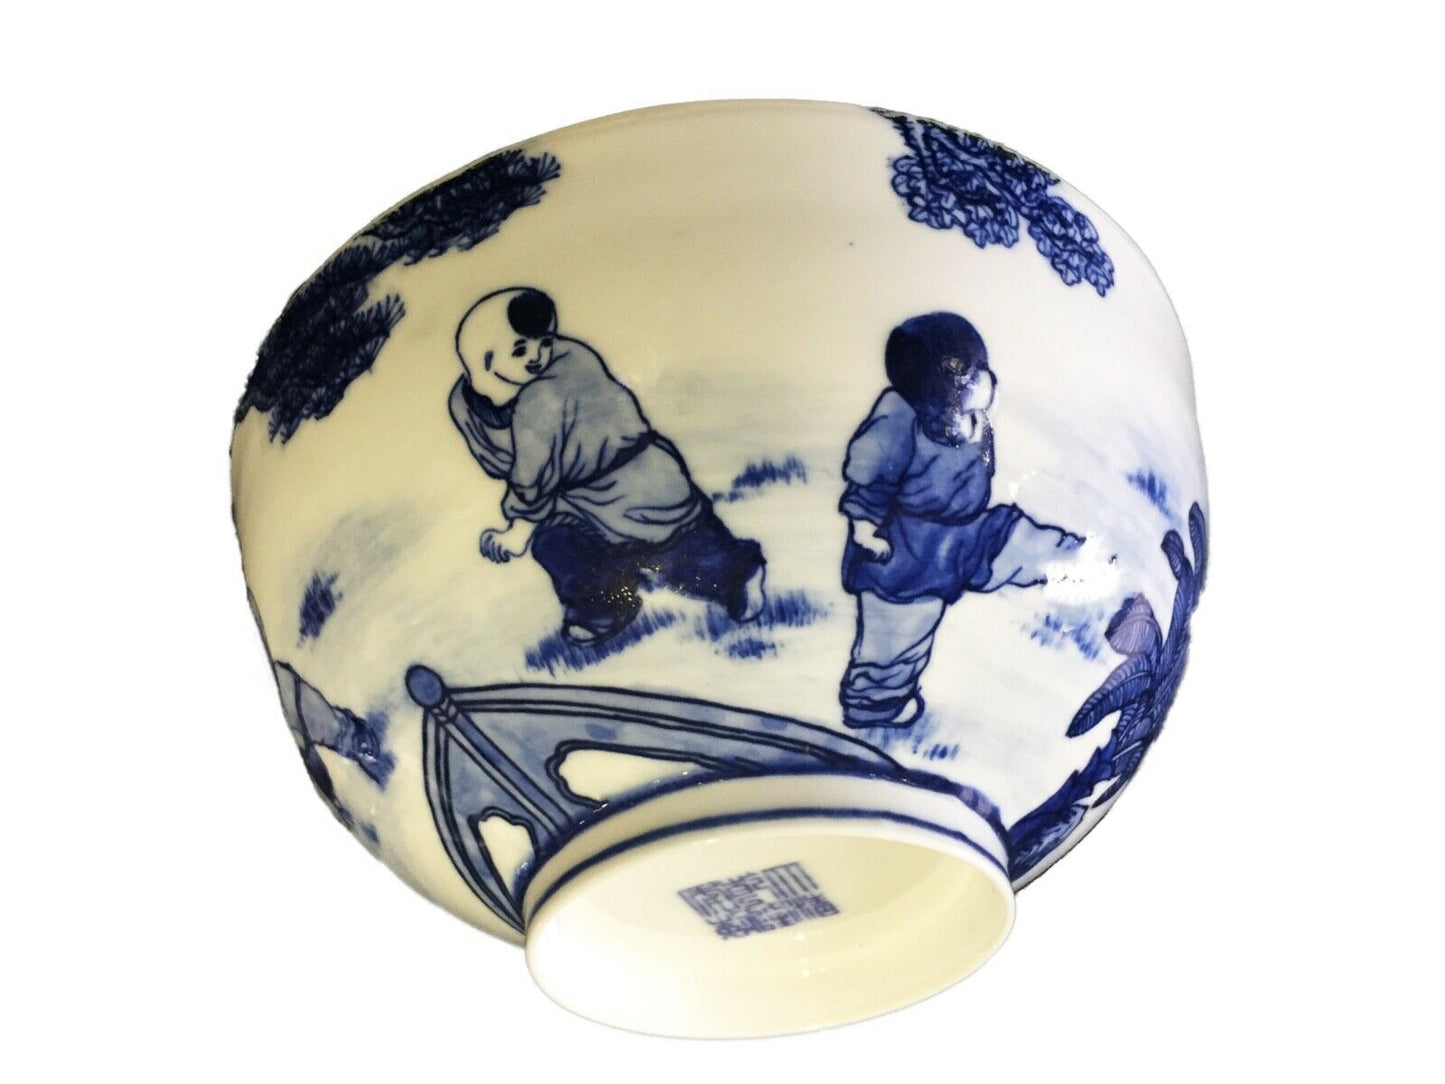 #2023 Chinese B & W Eggshell Porcelain  Bowl 7.75" Diameter